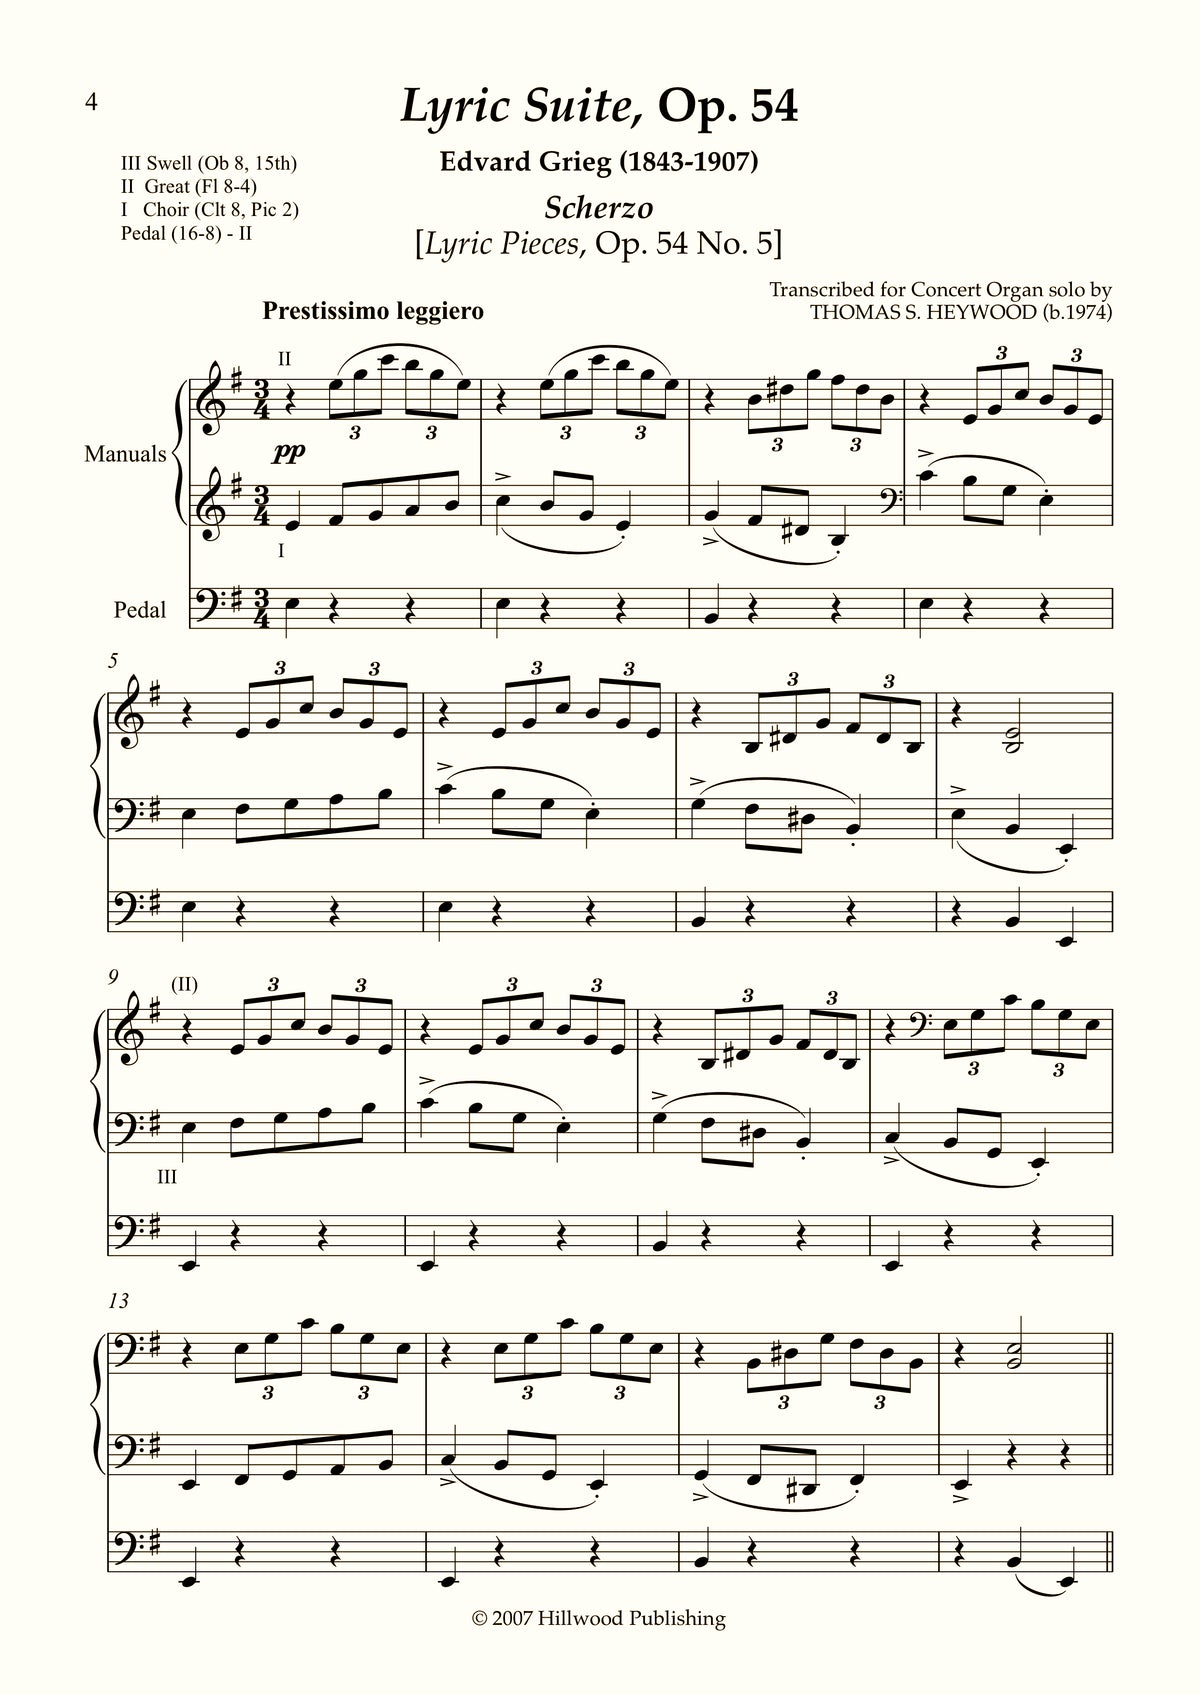 Grieg/Heywood - Scherzo from the Lyric Suite, Op. 54 (Score)